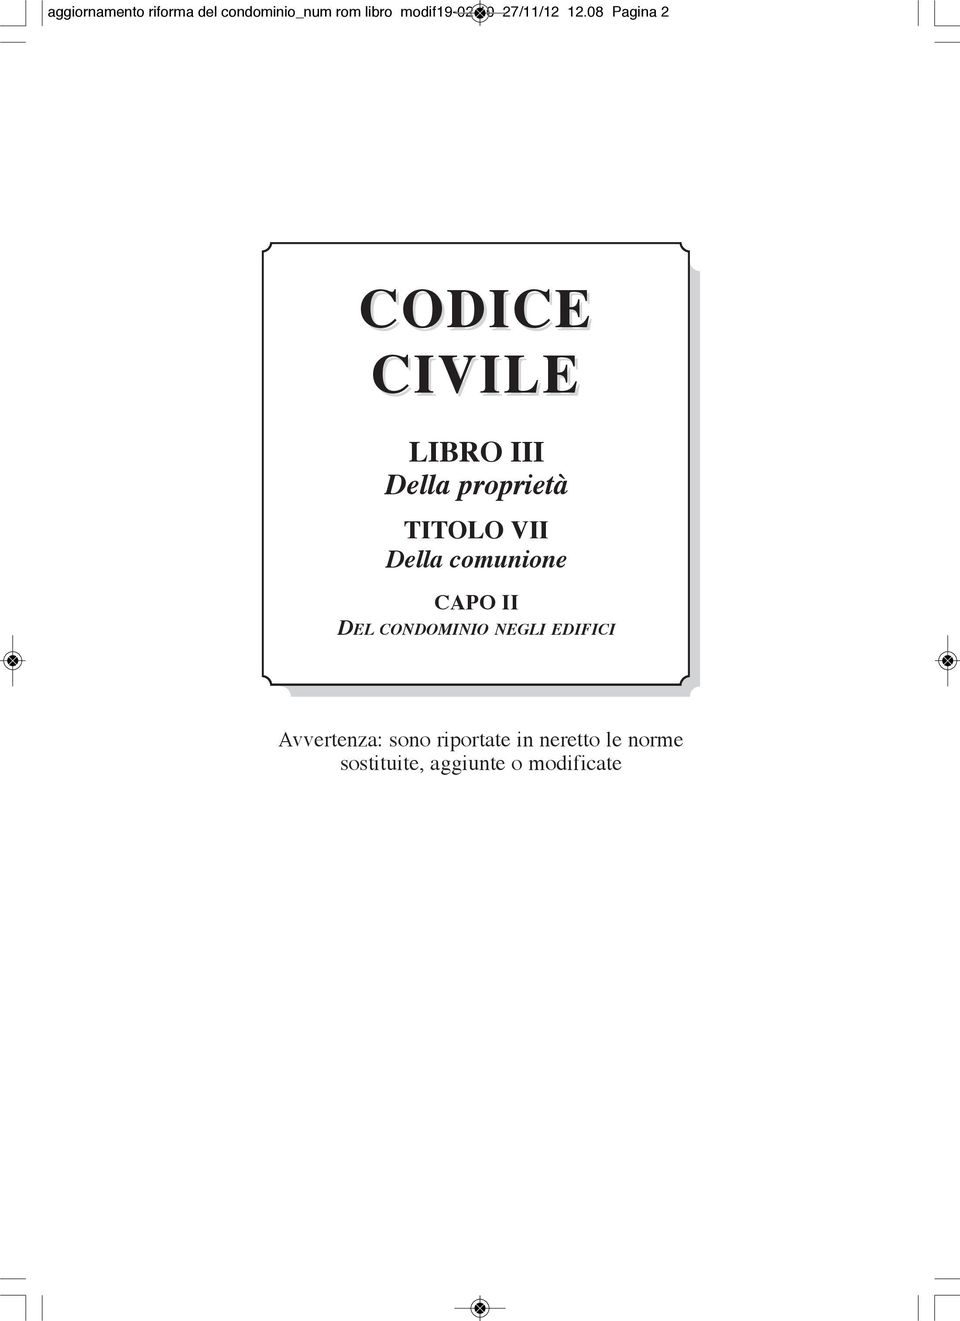 08 Pagina 2 CODICE CIVILE LIBRO III Della proprietà TITOLO VII Della